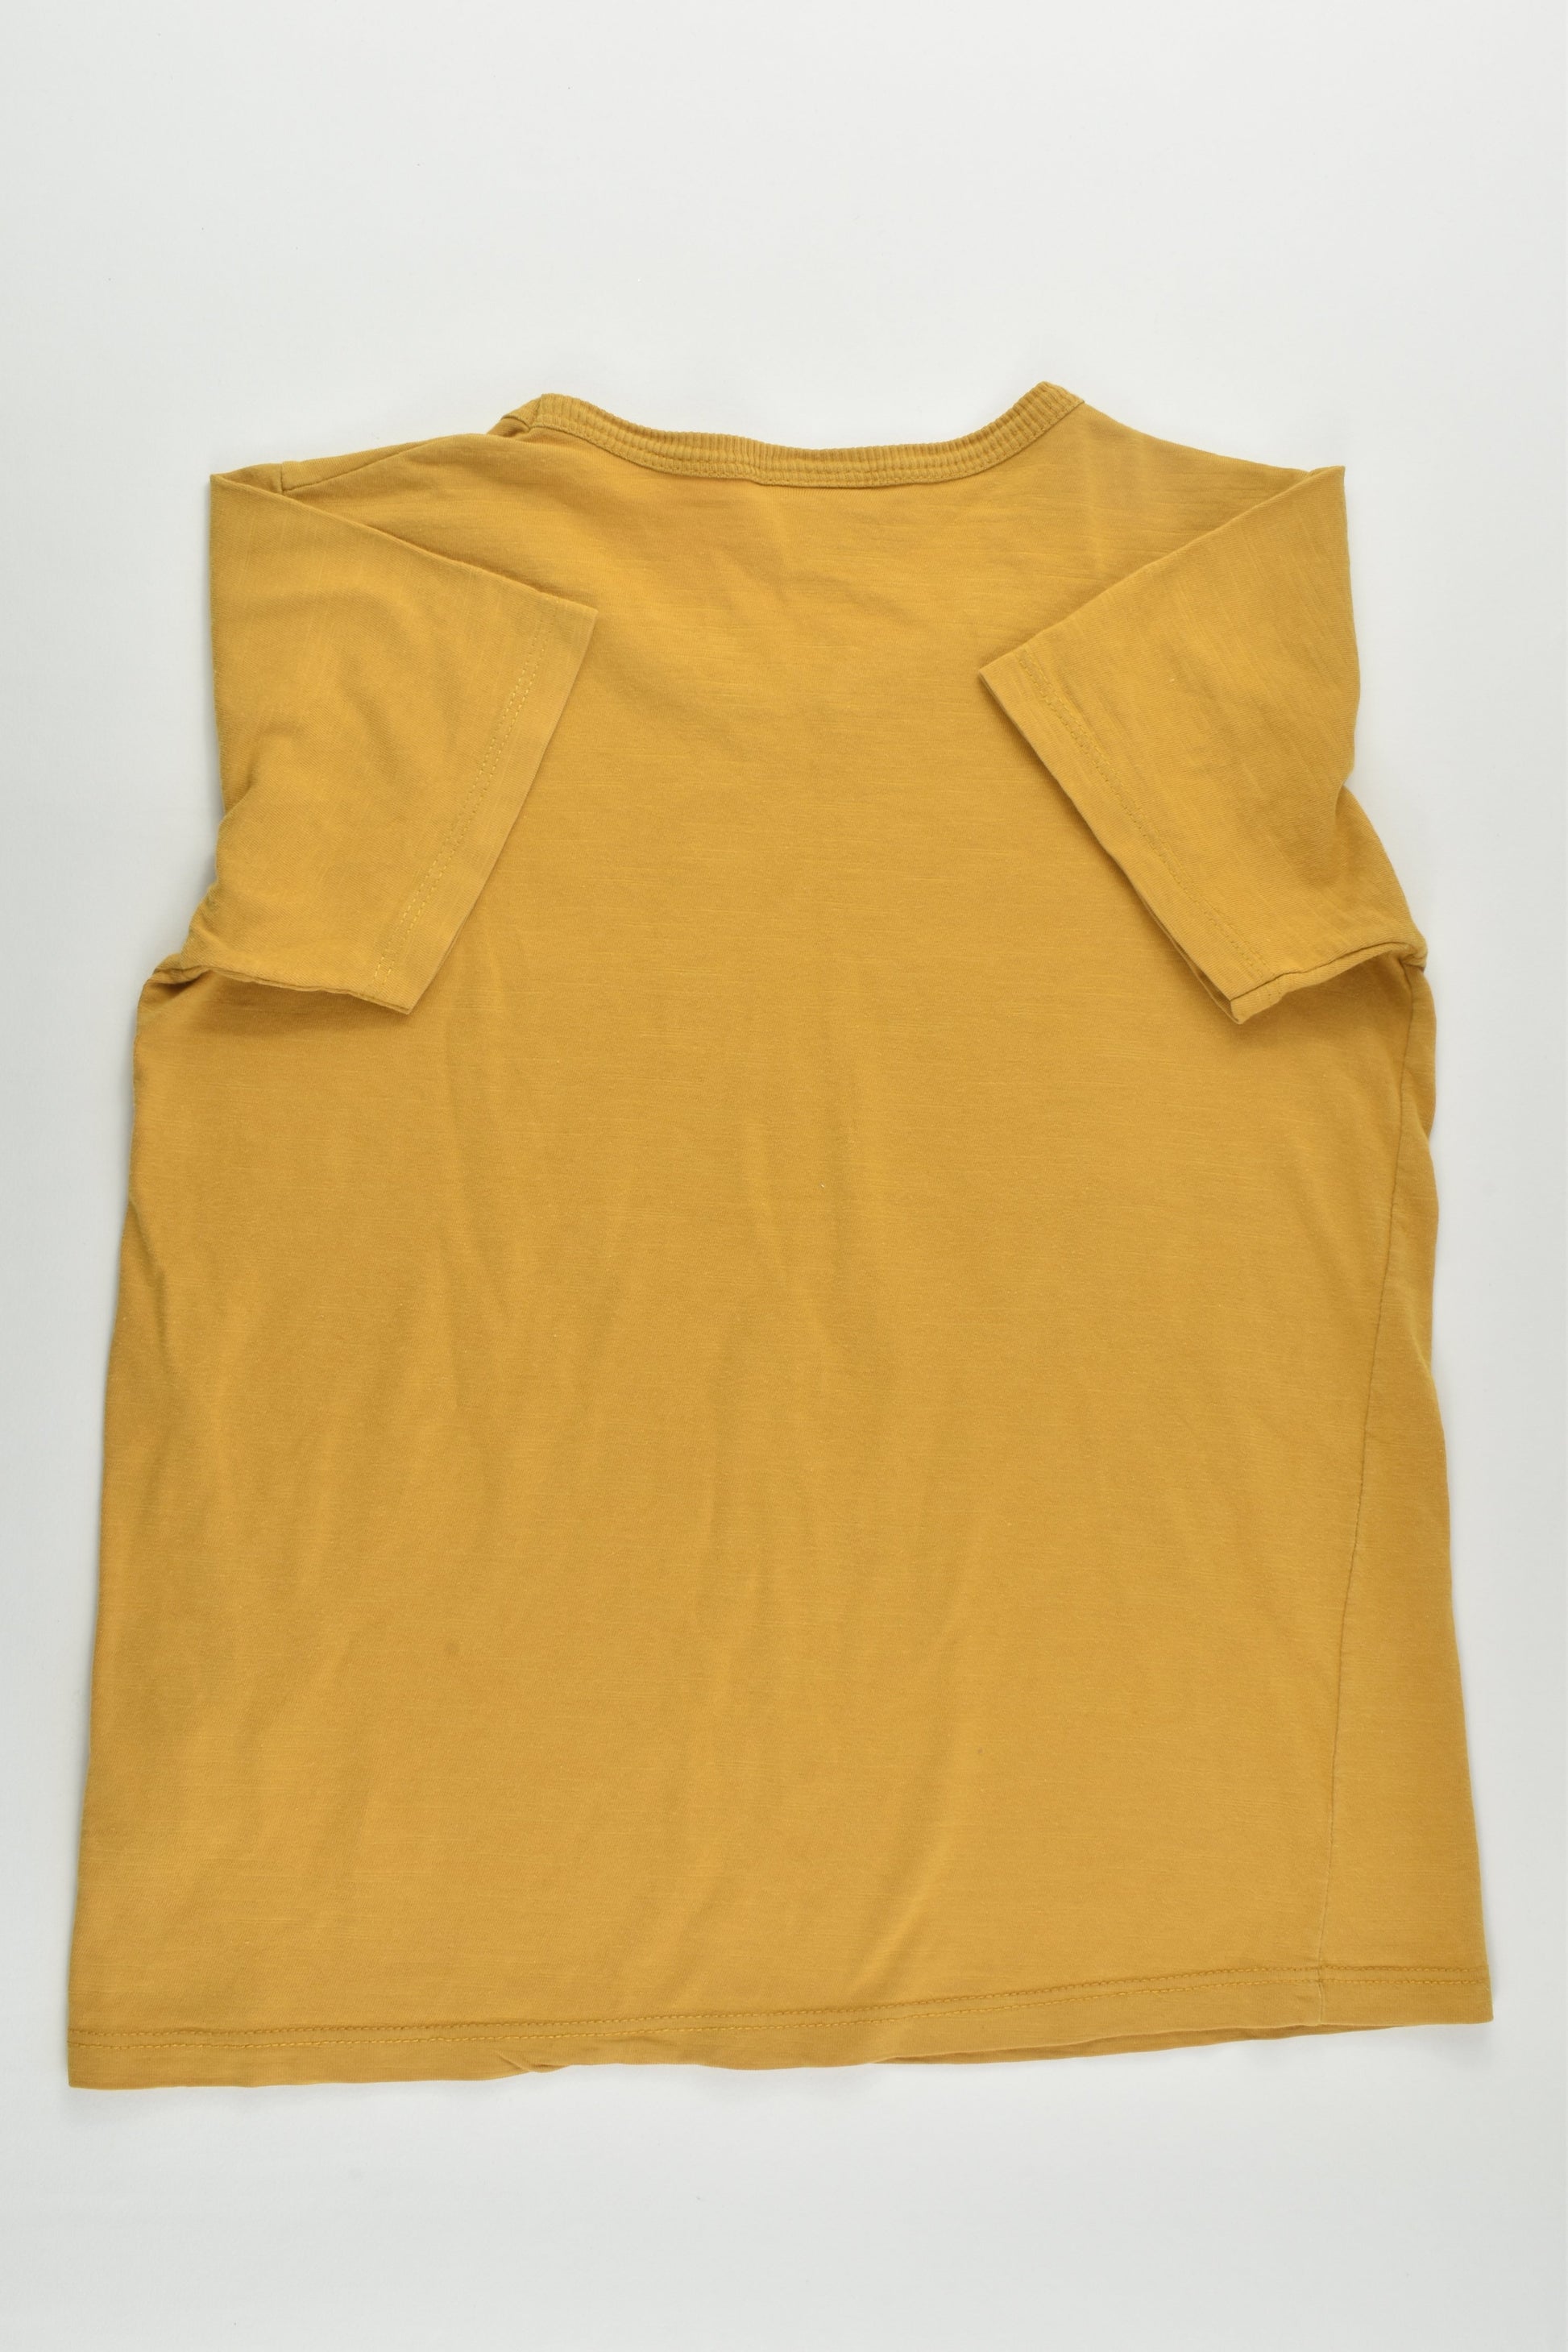 Zara Size 5/6 (118 cm) 'Dreamed Score' T-shirt